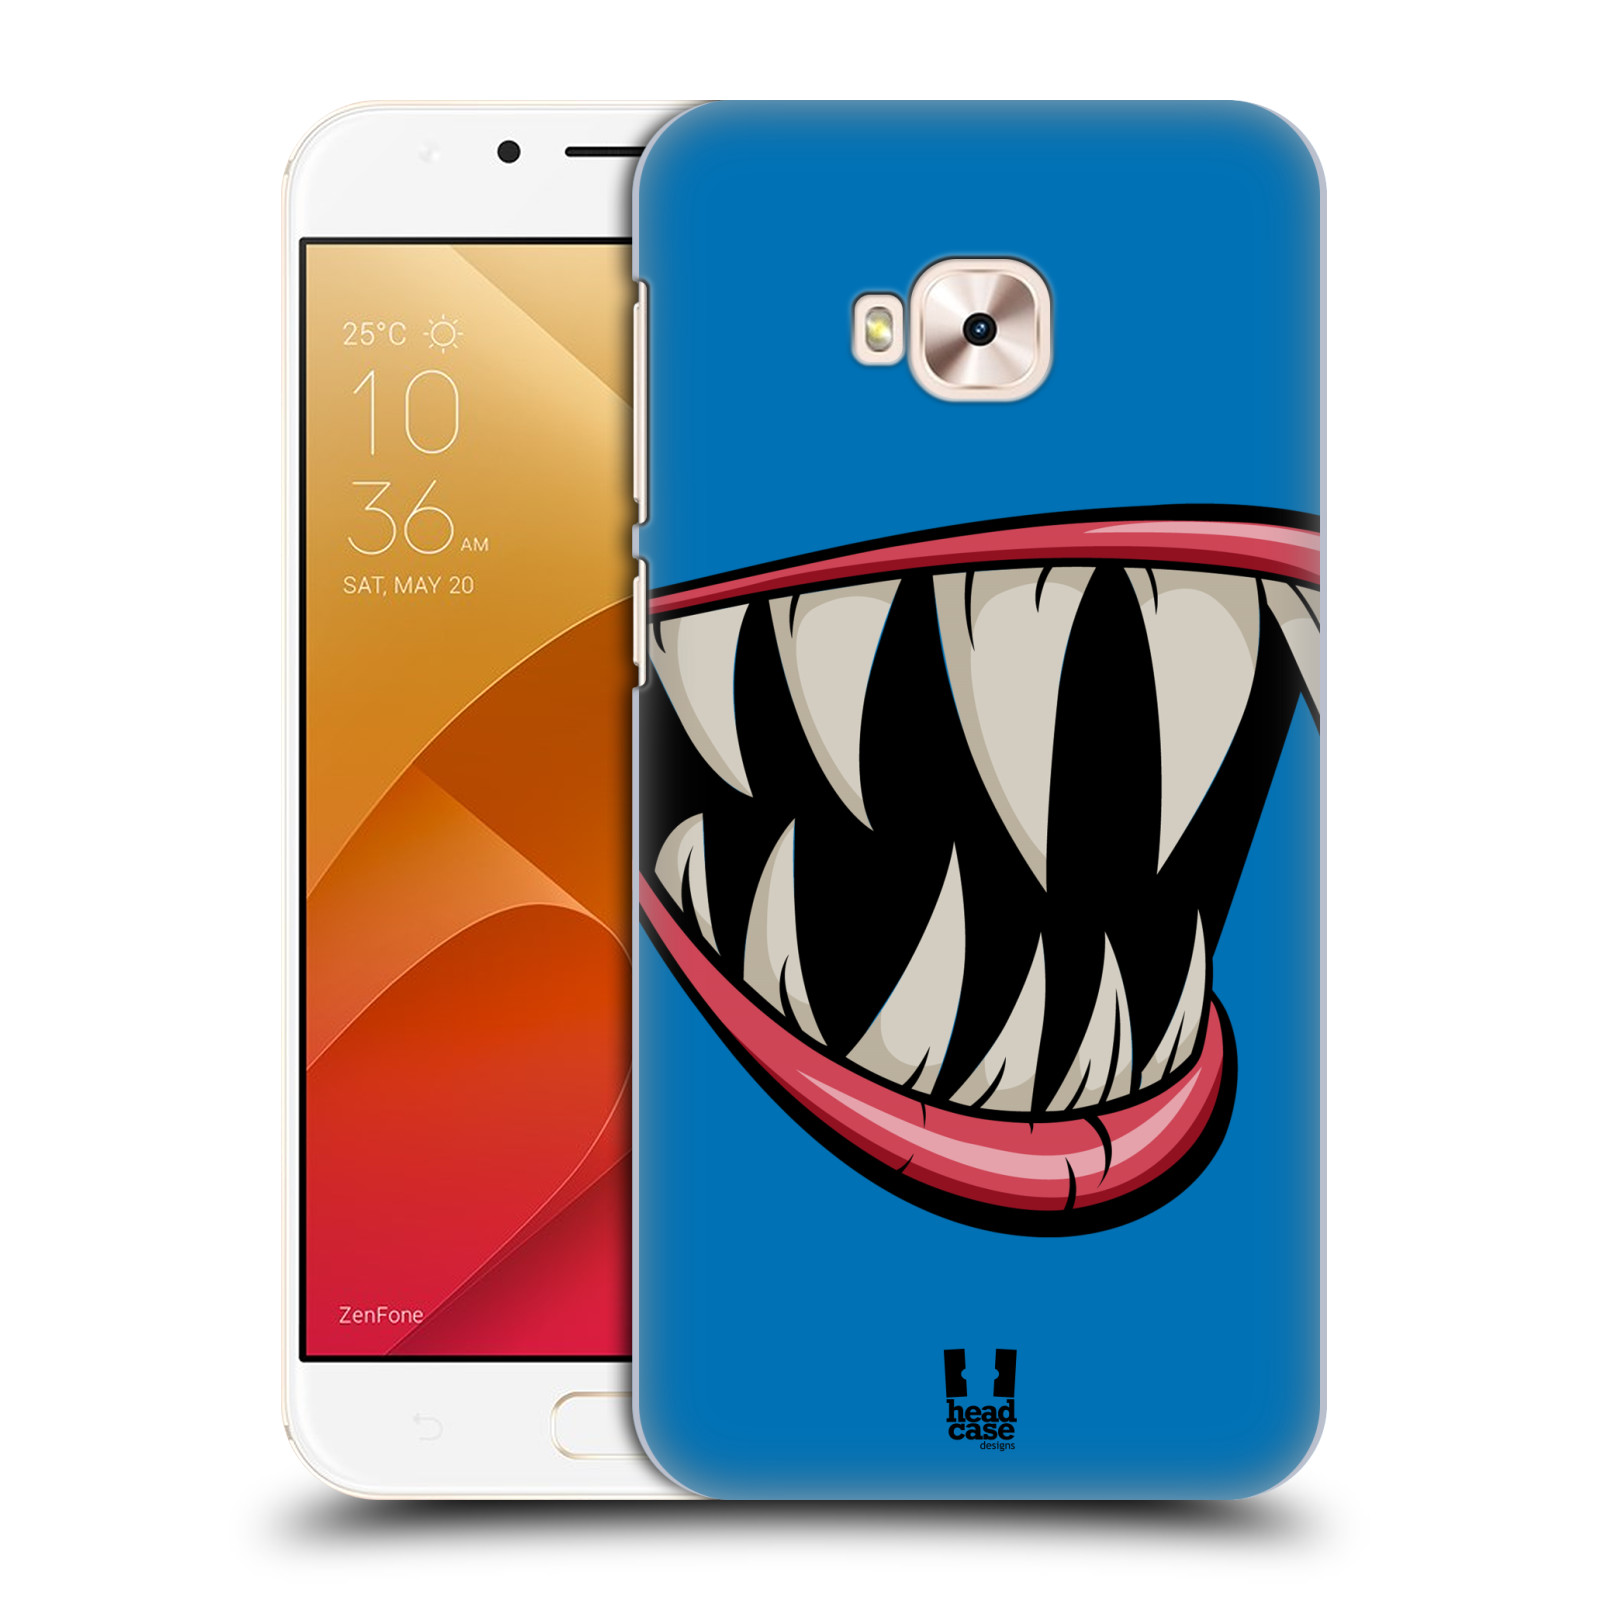 HEAD CASE plastový obal na mobil Asus Zenfone 4 Selfie Pro ZD552KL vzor Zvířecí úsměv ryba modrá